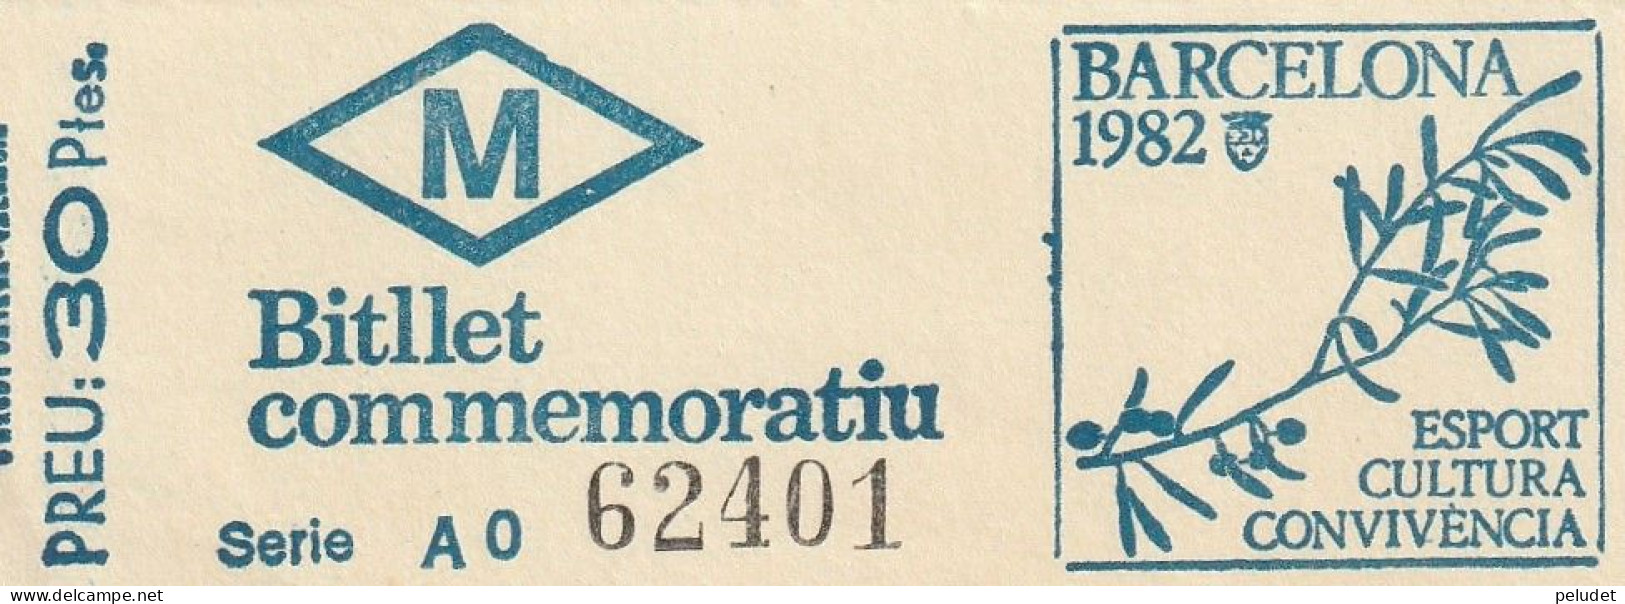 Ticket Billet Billet -- Billet Commemoratiu - Metro Barcelona - 1982 - Europa